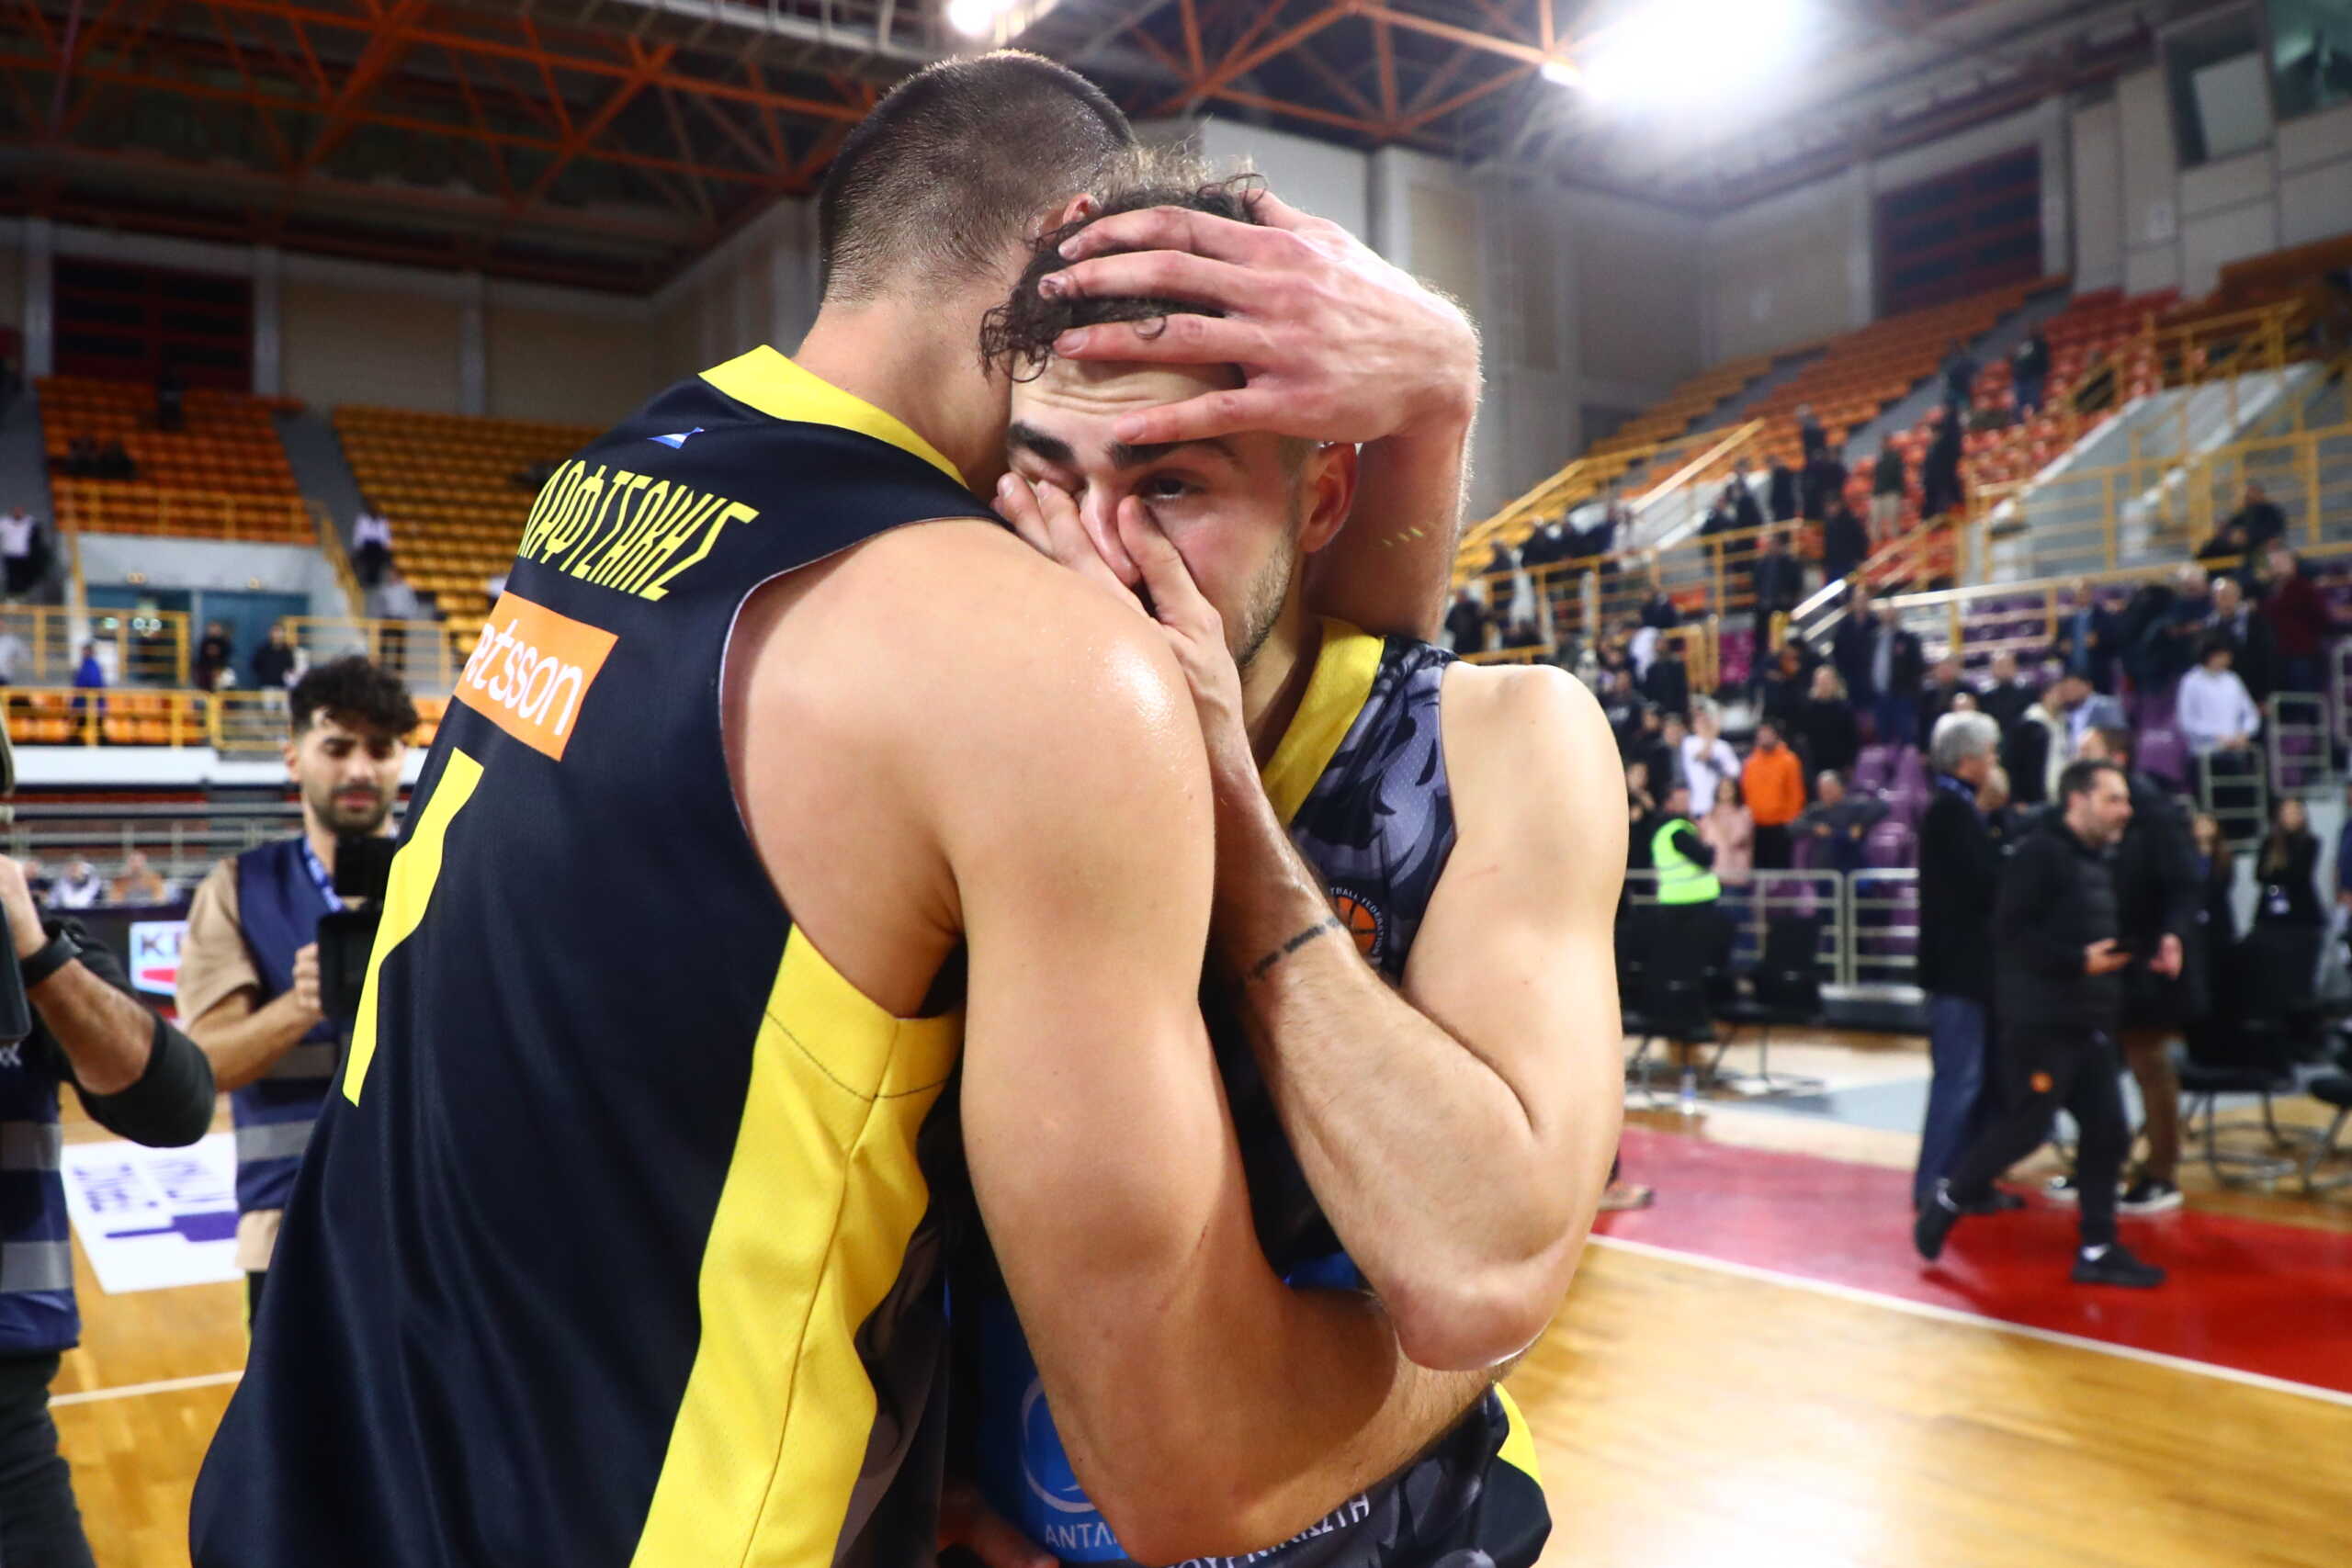 ΠΑΟΚ – Άρης: Ο Βασίλης Τολιόπουλος ξέσπασε σε κλάματα μετά τη νίκη των «κιτρίνων» στο Final 8 του Κυπέλλου Ελλάδας